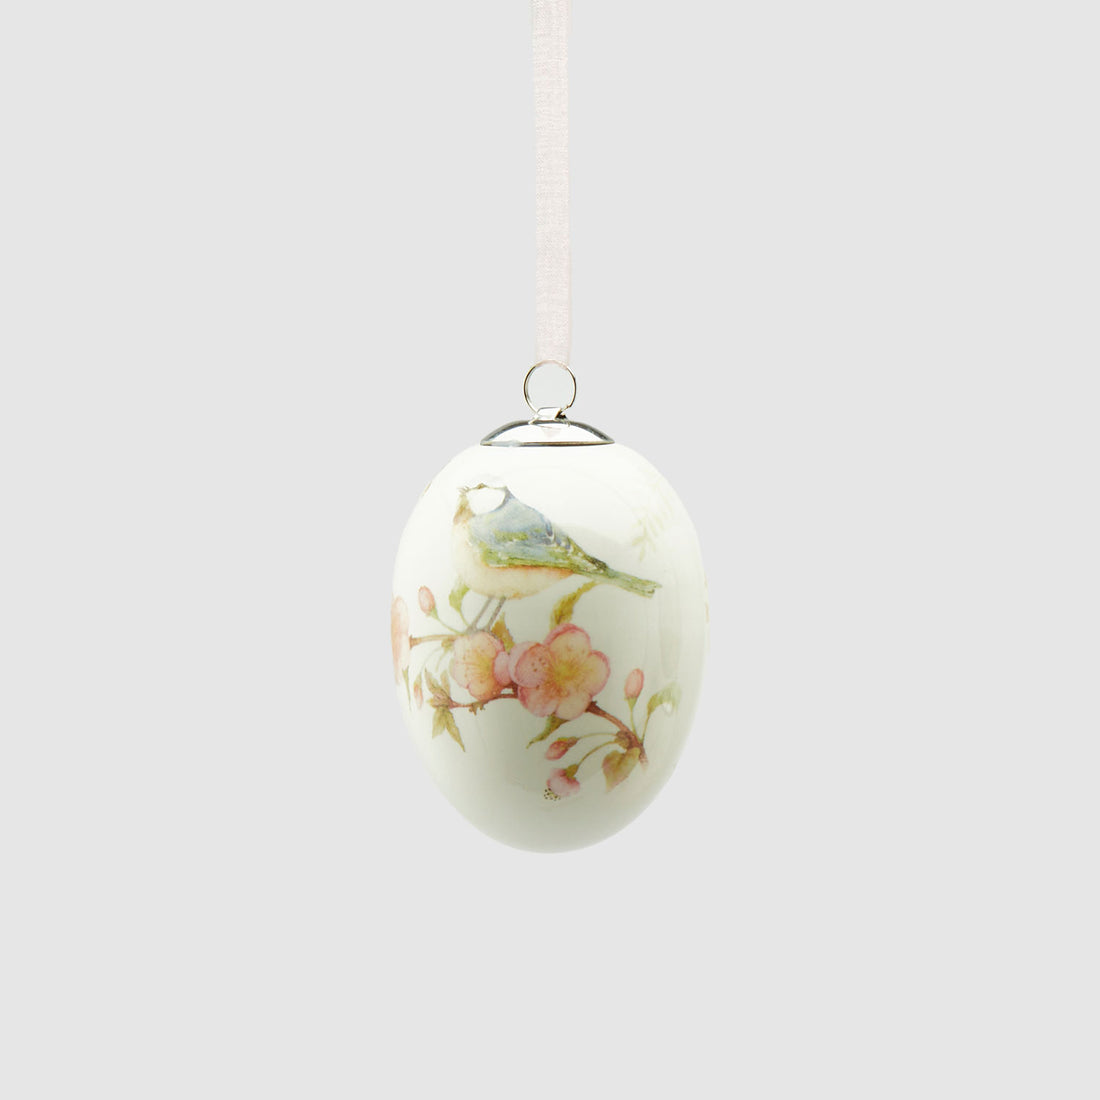 EDG Enzo De Gasperi Uovo Ovetto di Pasqua 7,5cm Ceramica Decorazione Pasquale